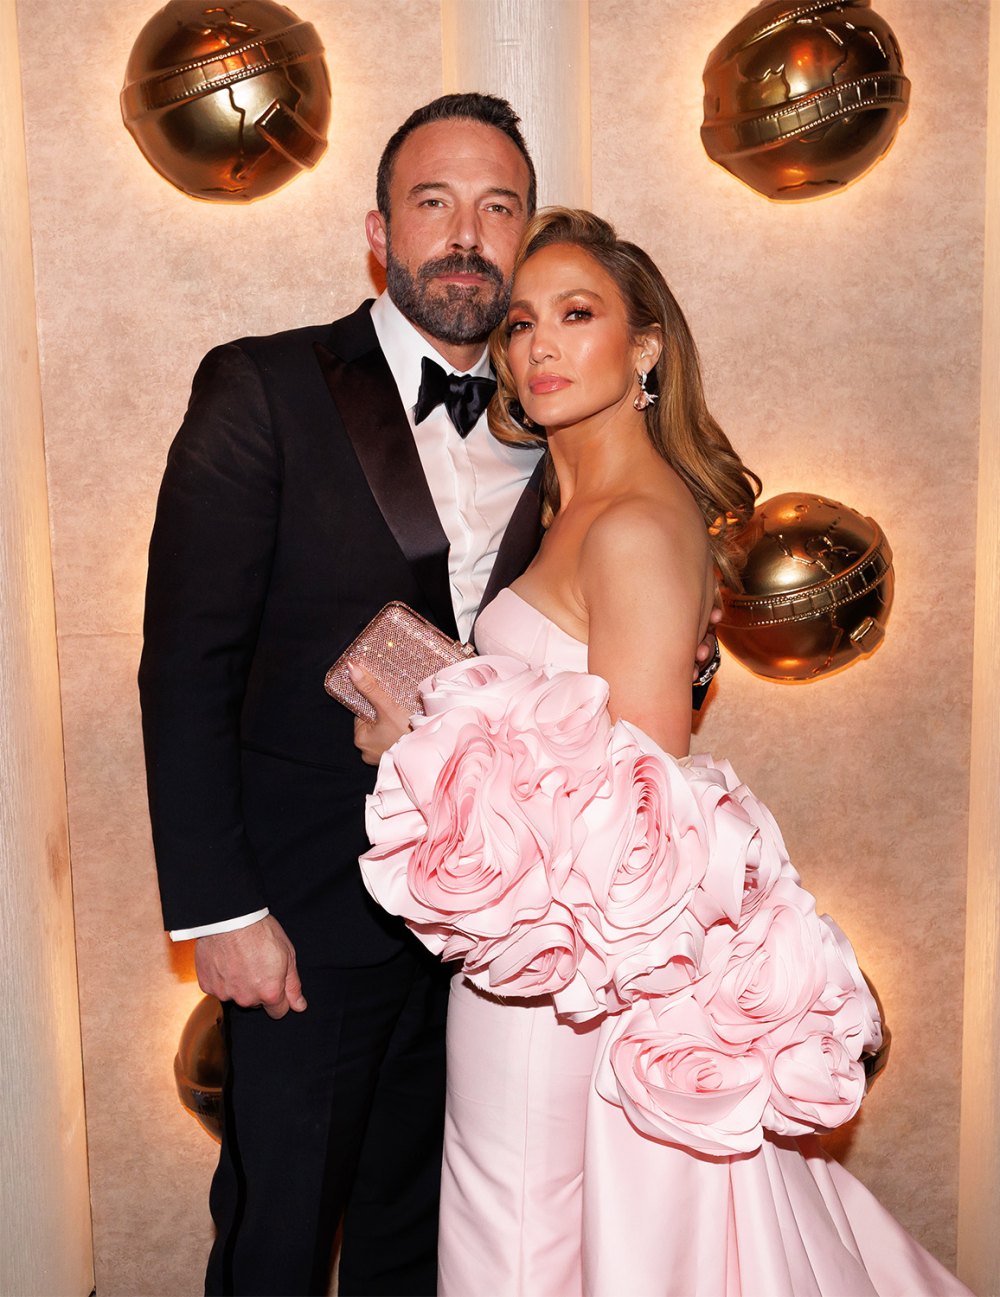 Jennifer Lopez's multiple marriages aren't uncommon